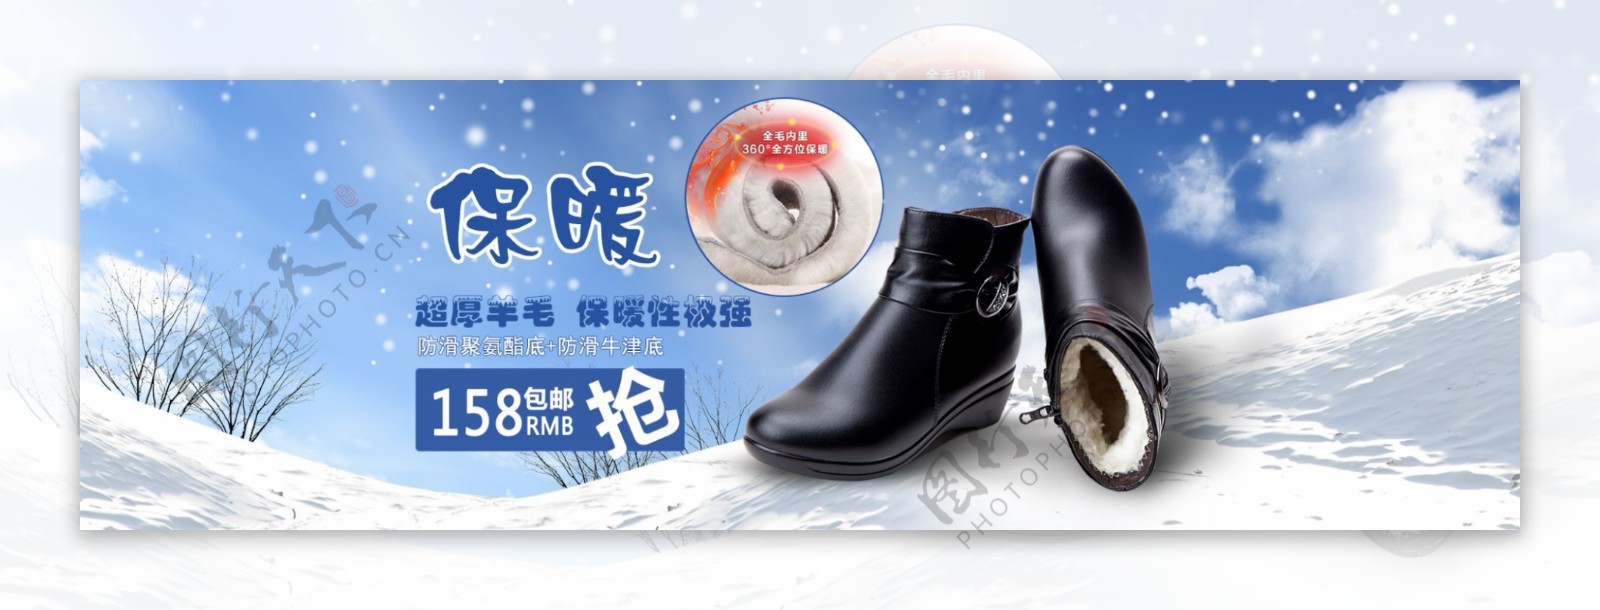 淘宝保暖棉鞋促销海报设计PSD素材